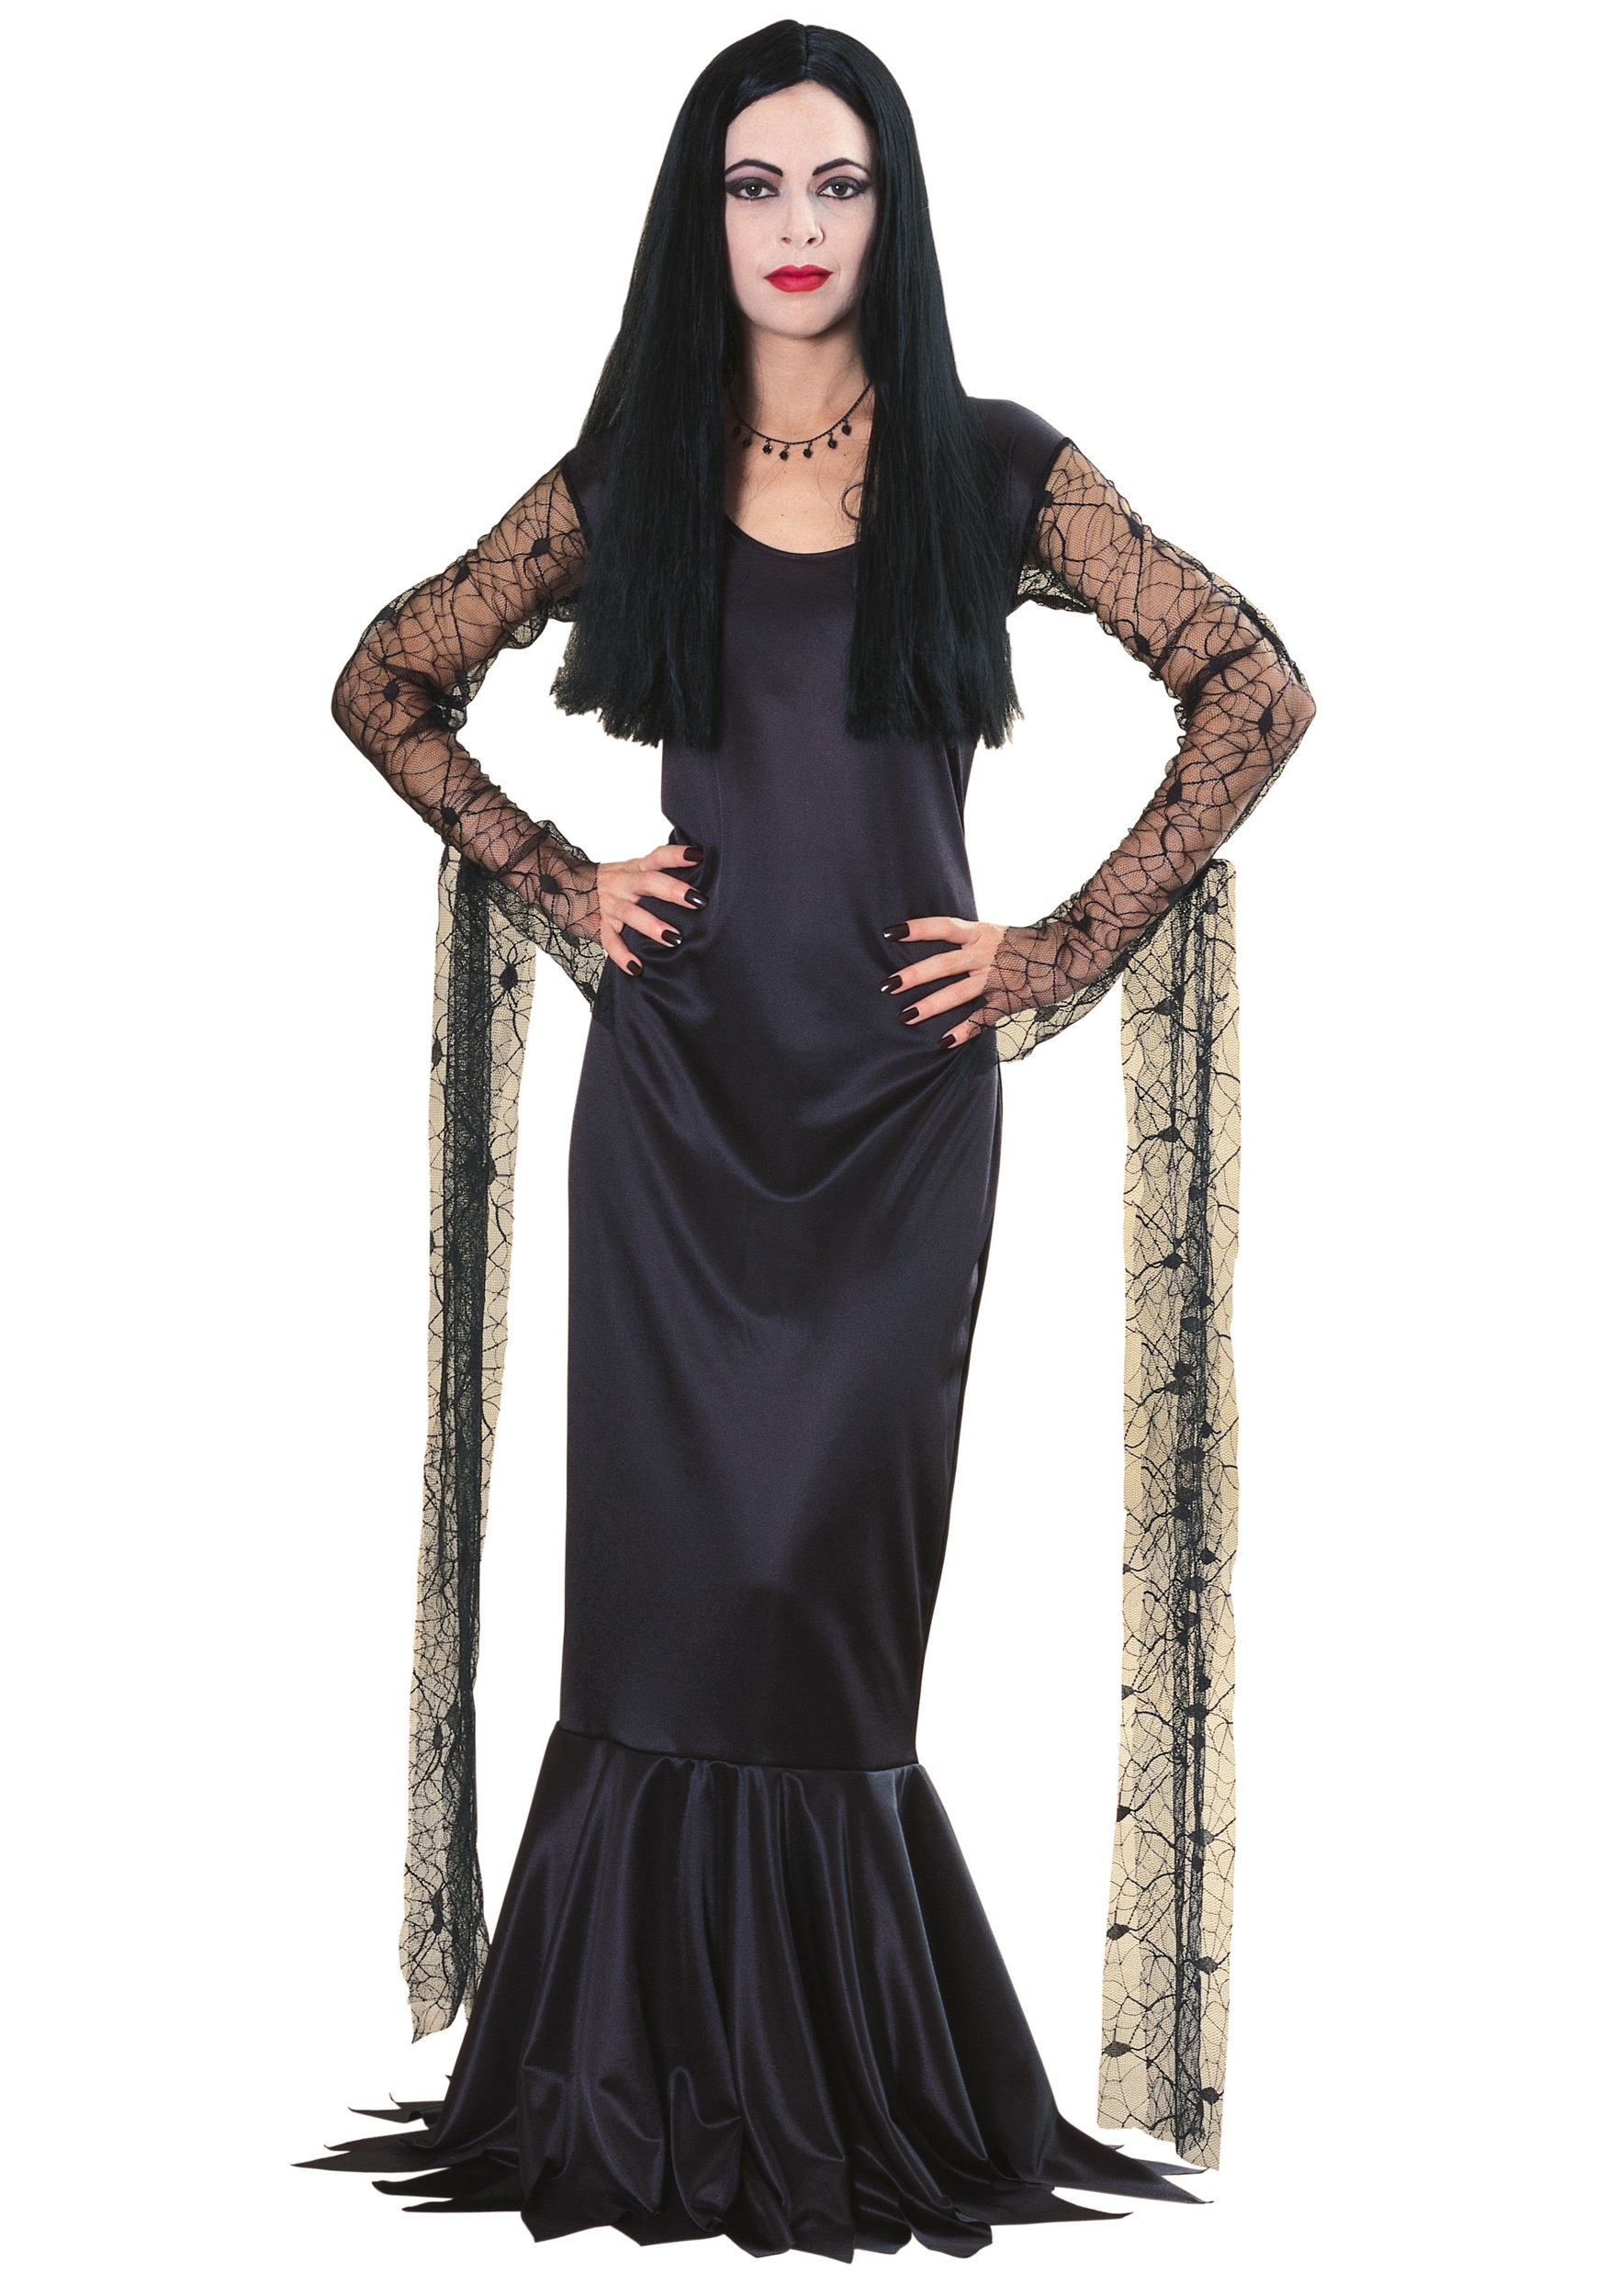 Morticia Addams Costume for Women